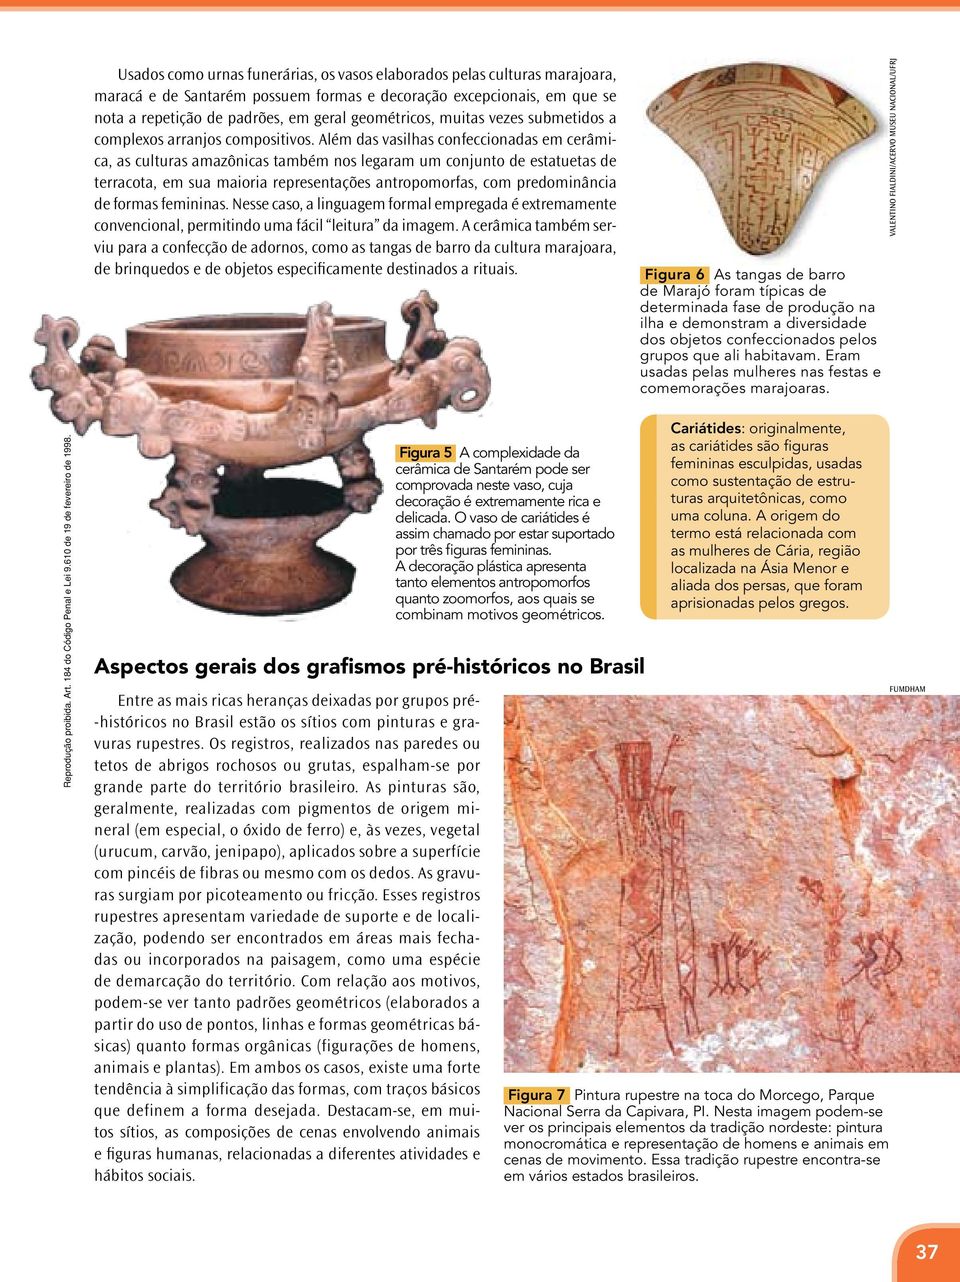 Além das vasilhas confeccionadas em cerâmica, as culturas amazônicas também nos legaram um conjunto de estatuetas de terracota, em sua maioria representações antropomorfas, com predominância de